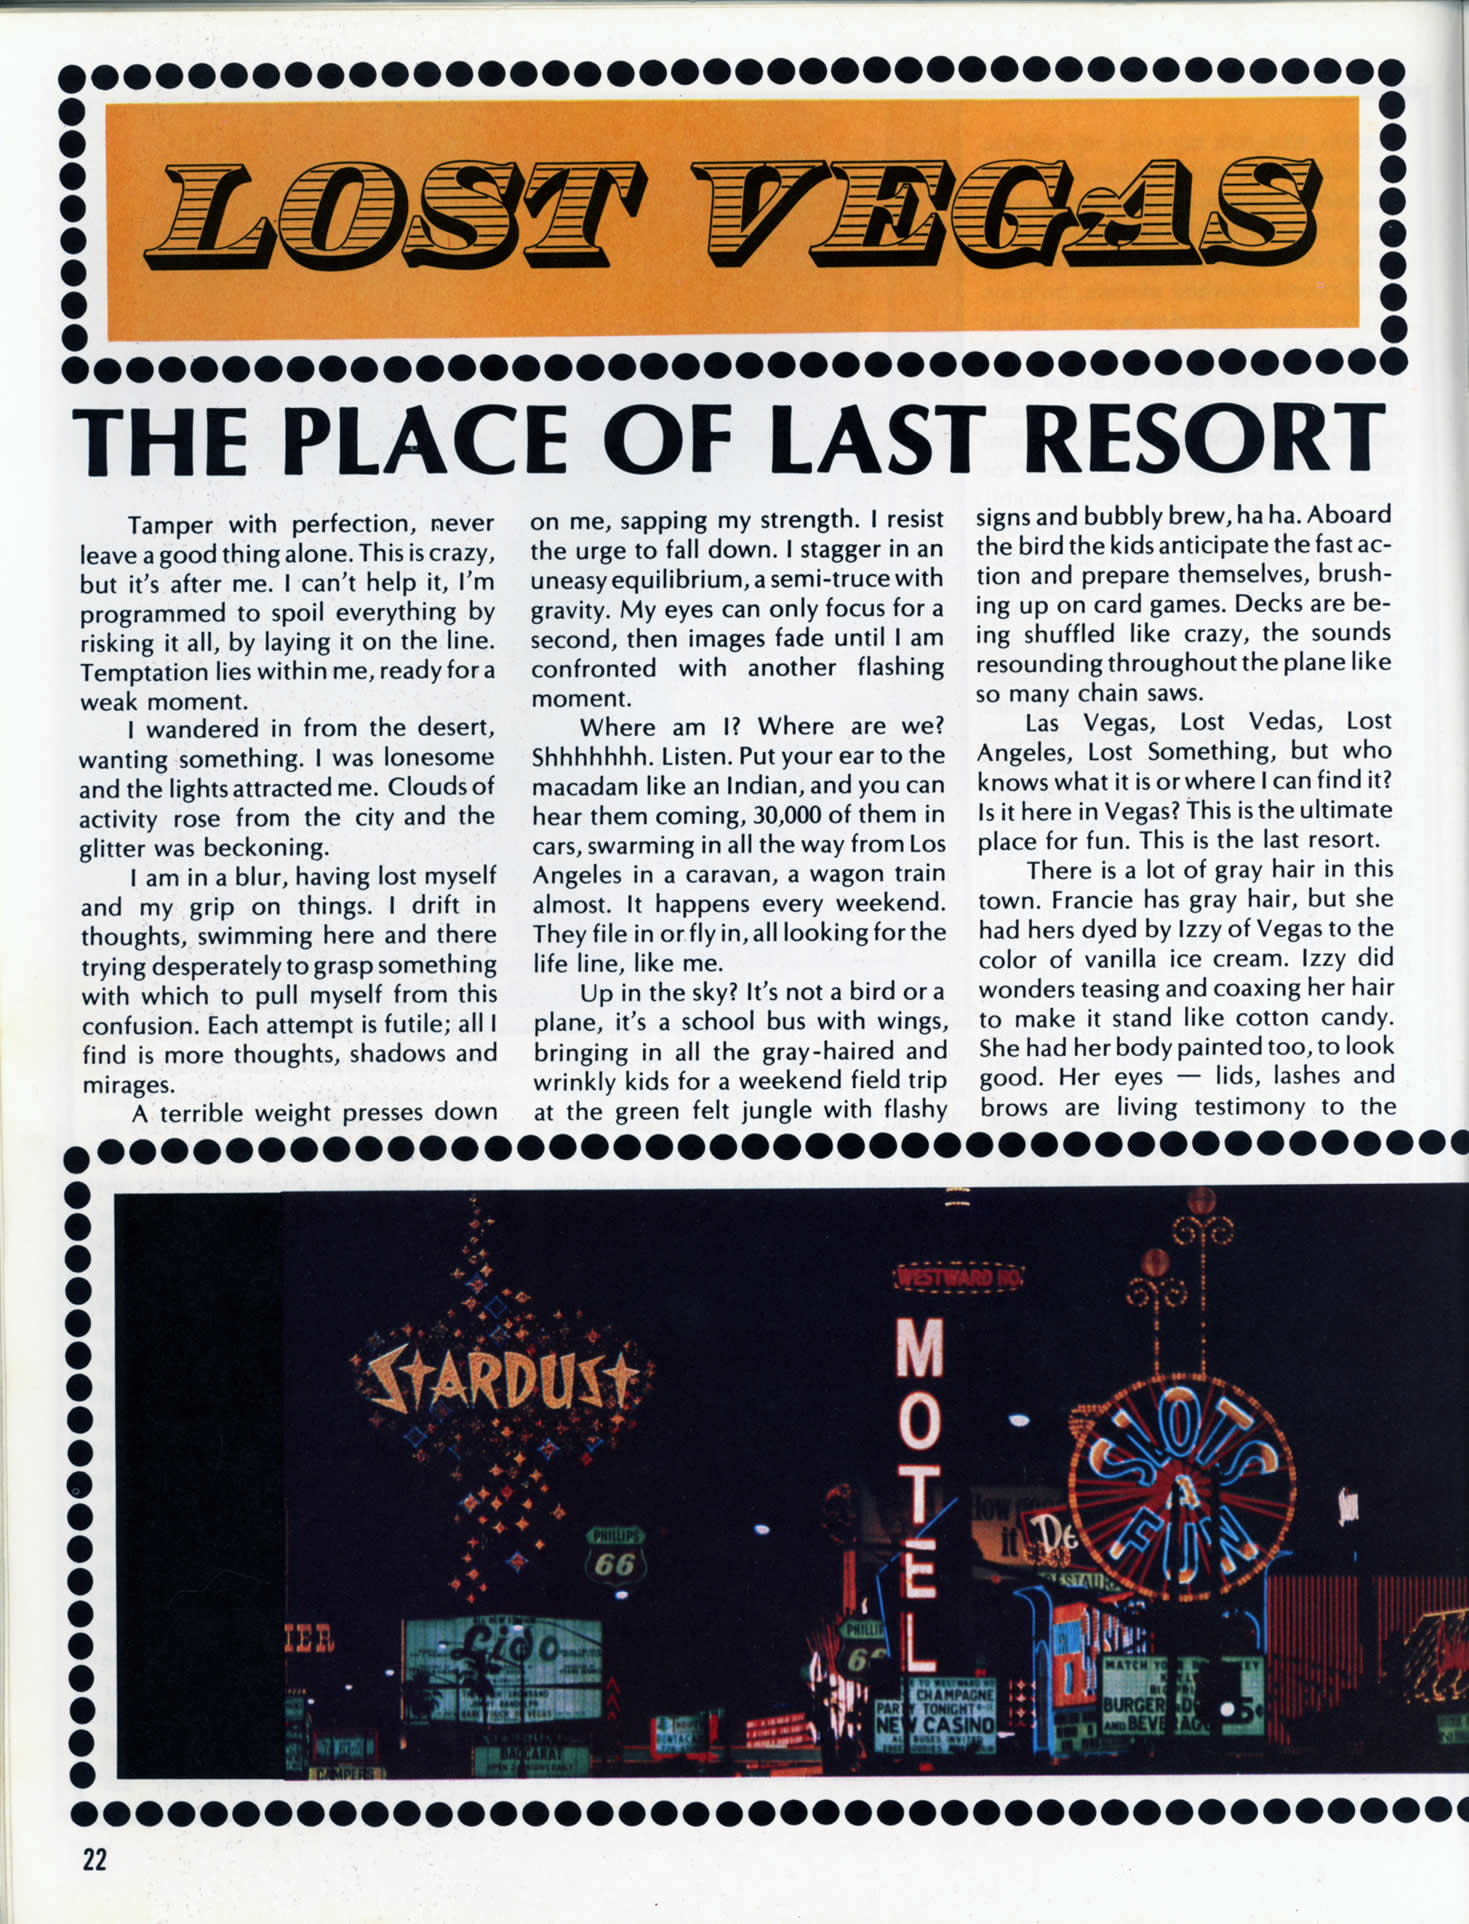 page22_Lost_Vegas_article.jpg 374.0K